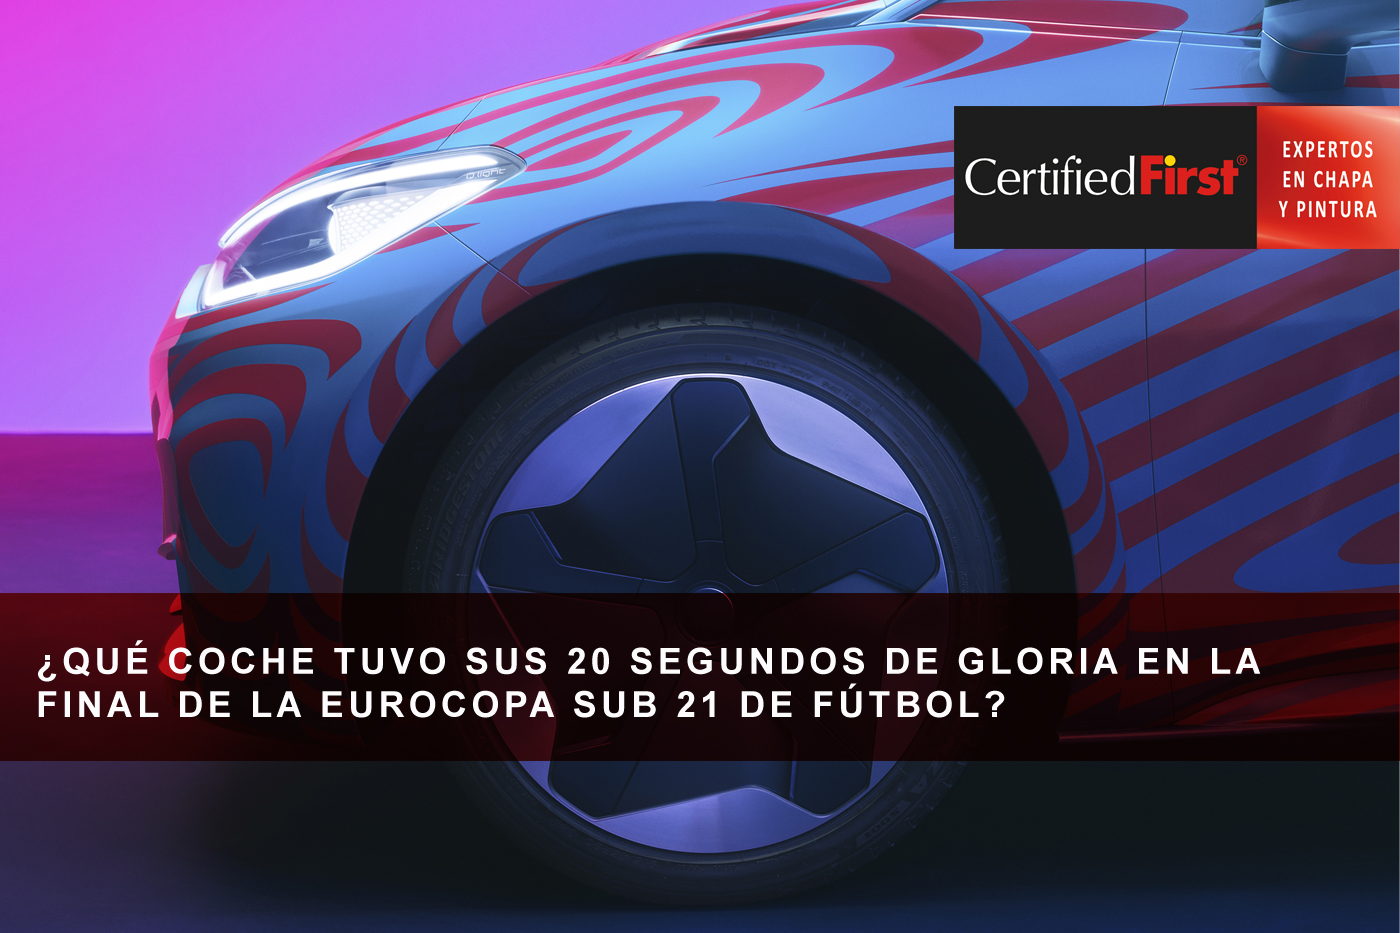 ¿Qué coche tuvo sus 20 segundos de gloria en la final de la Eurocopa sub 21 de fútbol?